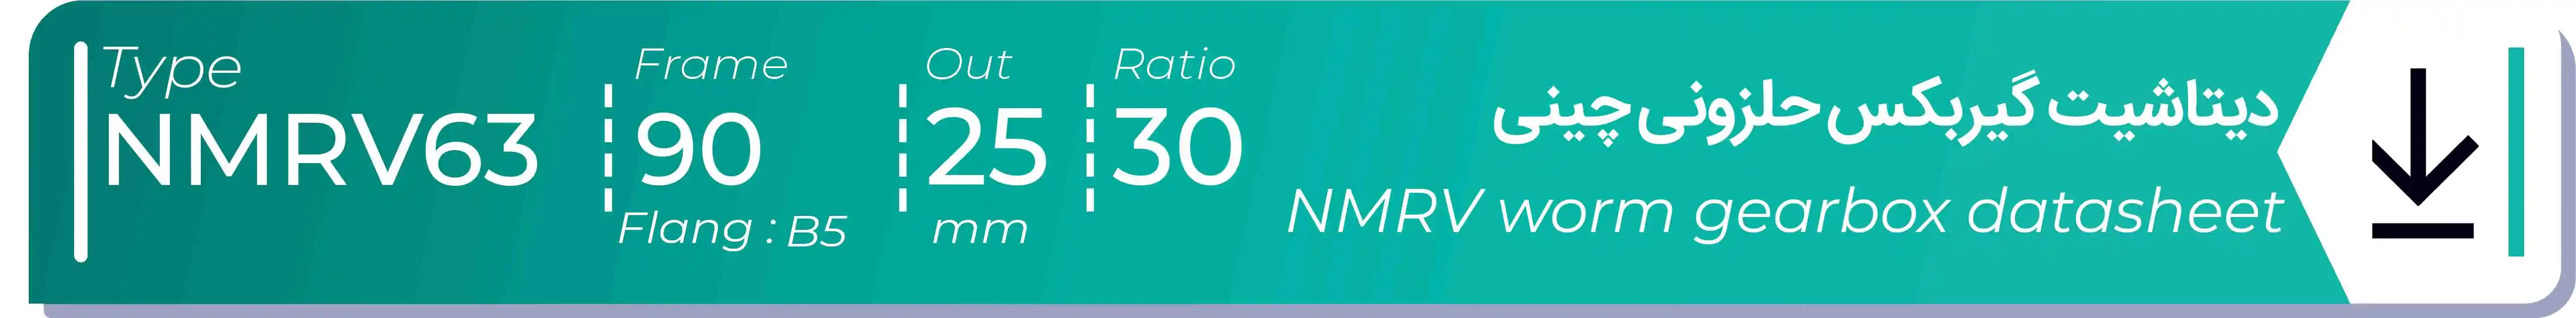  دیتاشیت و مشخصات فنی گیربکس حلزونی چینی   NMRV63  -  با خروجی 25- میلی متر و نسبت30 و فریم 90